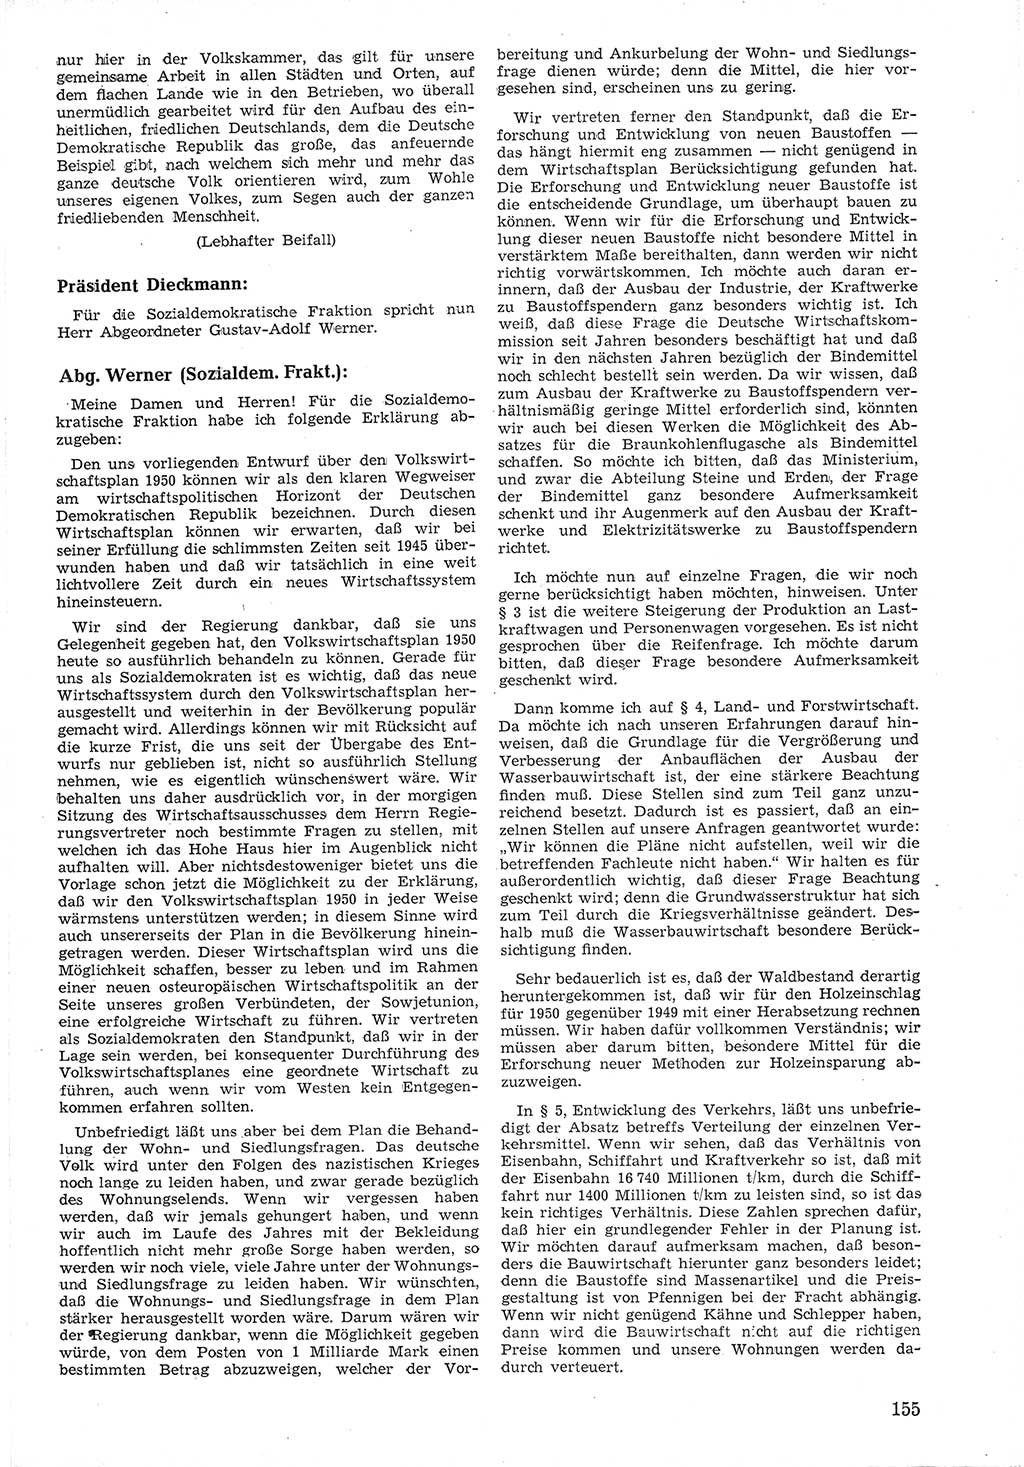 Provisorische Volkskammer (VK) der Deutschen Demokratischen Republik (DDR) 1949-1950, Dokument 167 (Prov. VK DDR 1949-1950, Dok. 167)